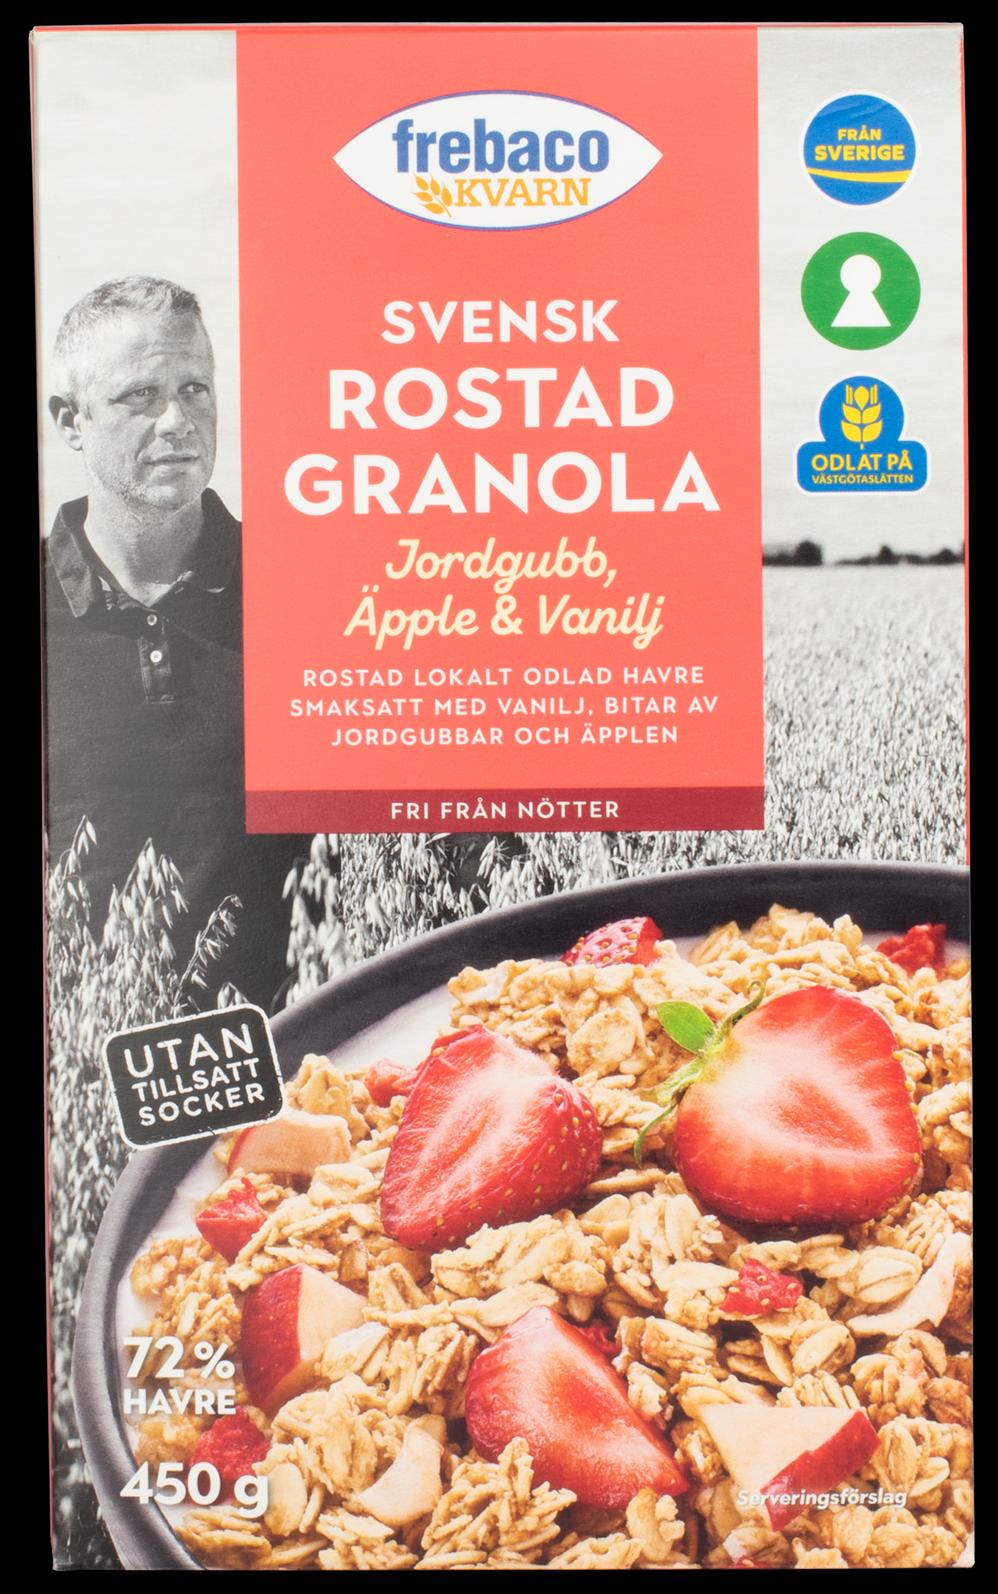 Frebaco kvarn – Rostad granola är nominerad till anti-priset Årets matbluff 2023.